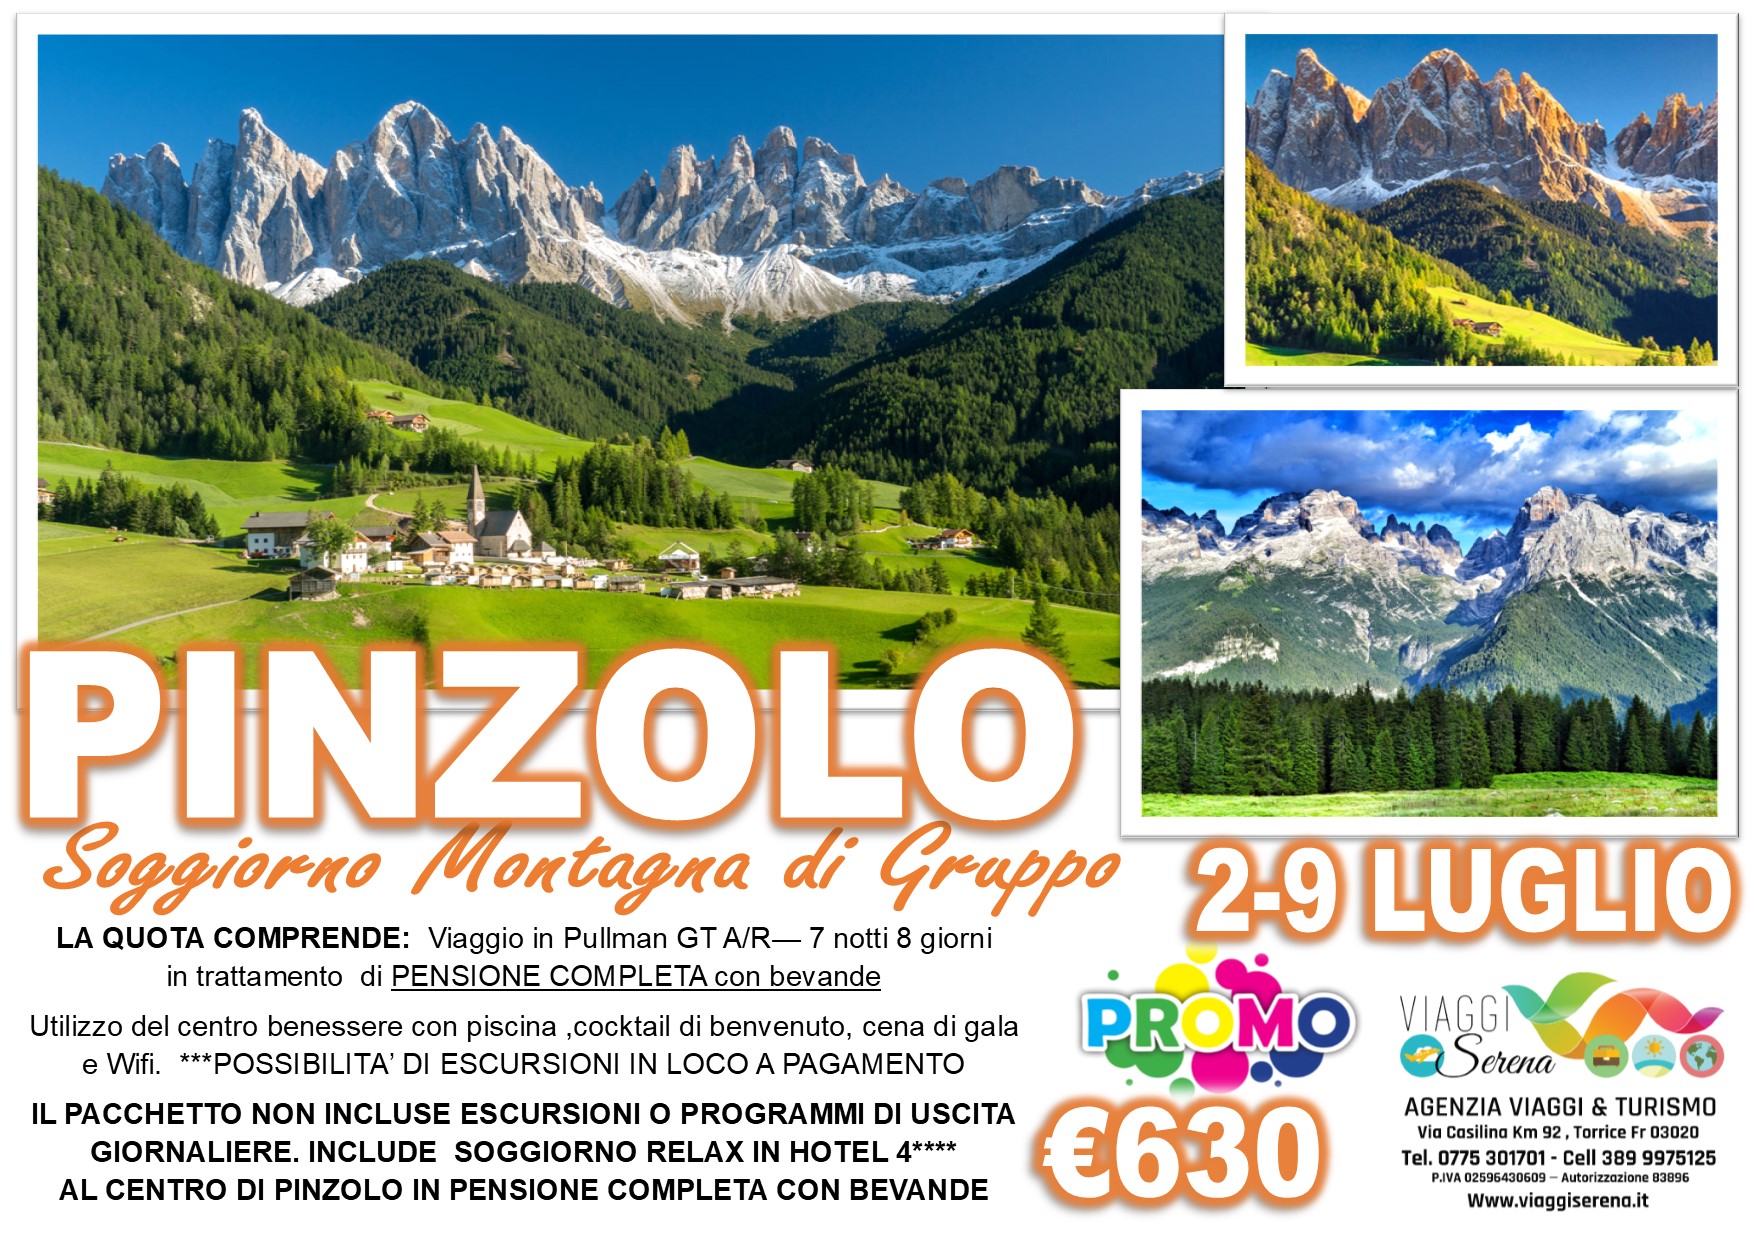 Viaggi di Gruppo: Soggiorno Montagna “Pinzolo” 2-9 Luglio  €630,00